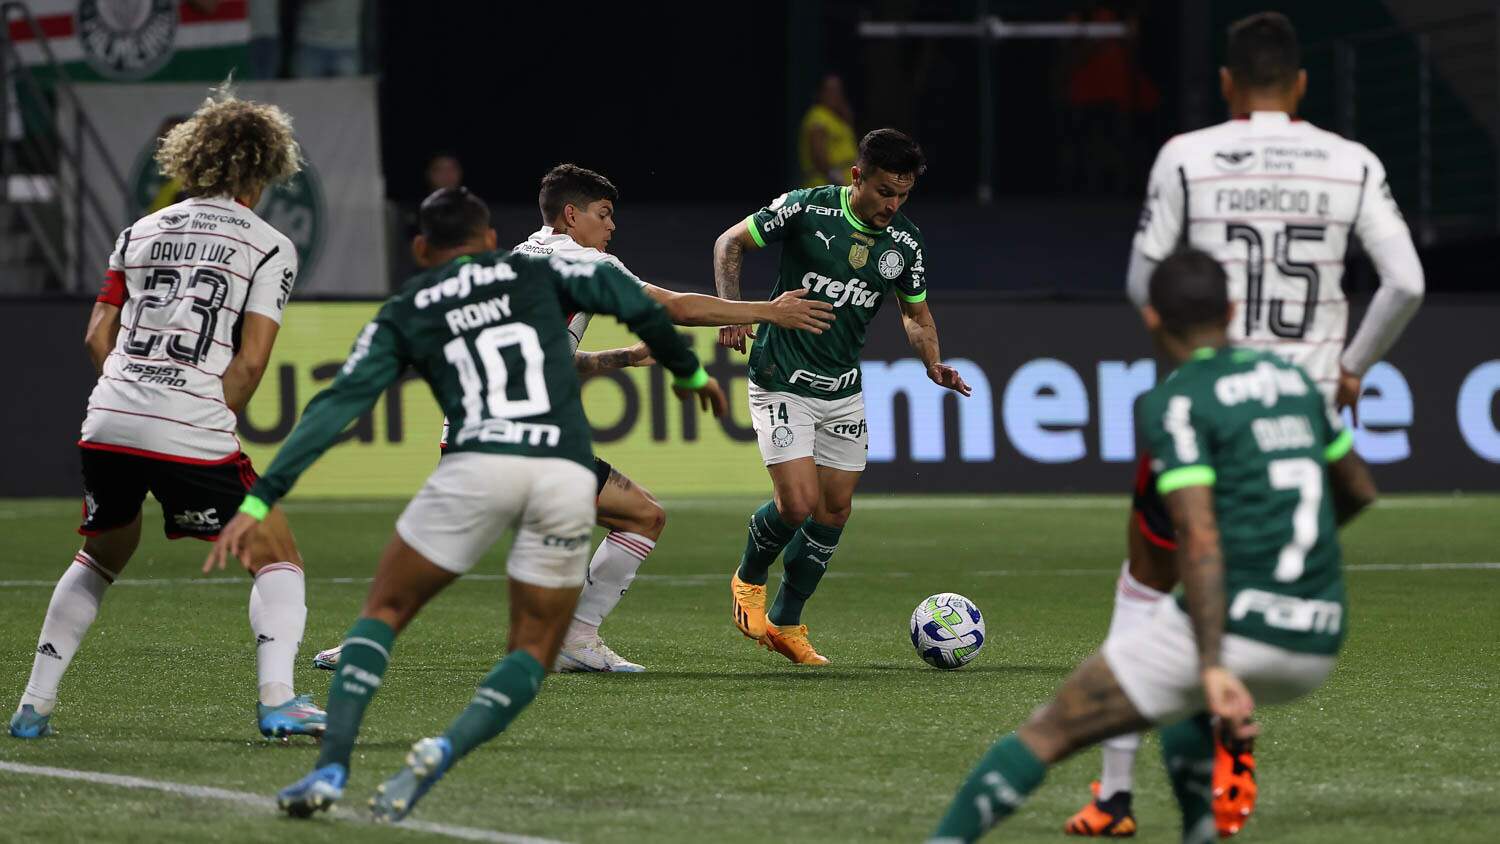 Rodada do Brasileirão tem Corinthians x Palmeiras e mais 3 jogos neste  sábado - Esportes - Campo Grande News